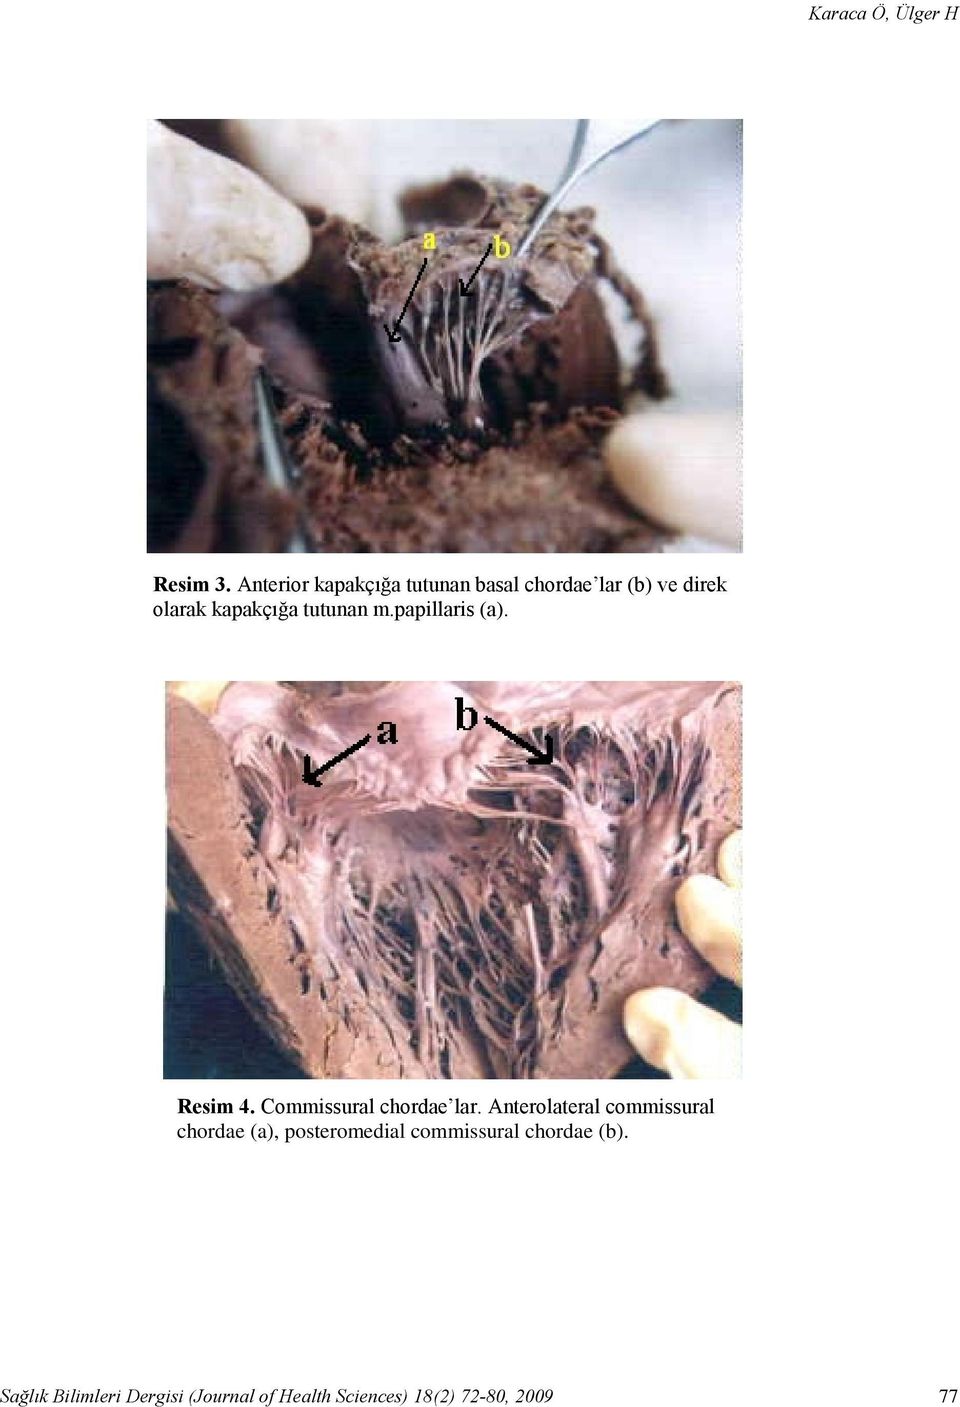 Anterior kapakçığa tutunan basal chordae lar (b) ve direk olarak kapakçığa tutunan m.papillaris (a).